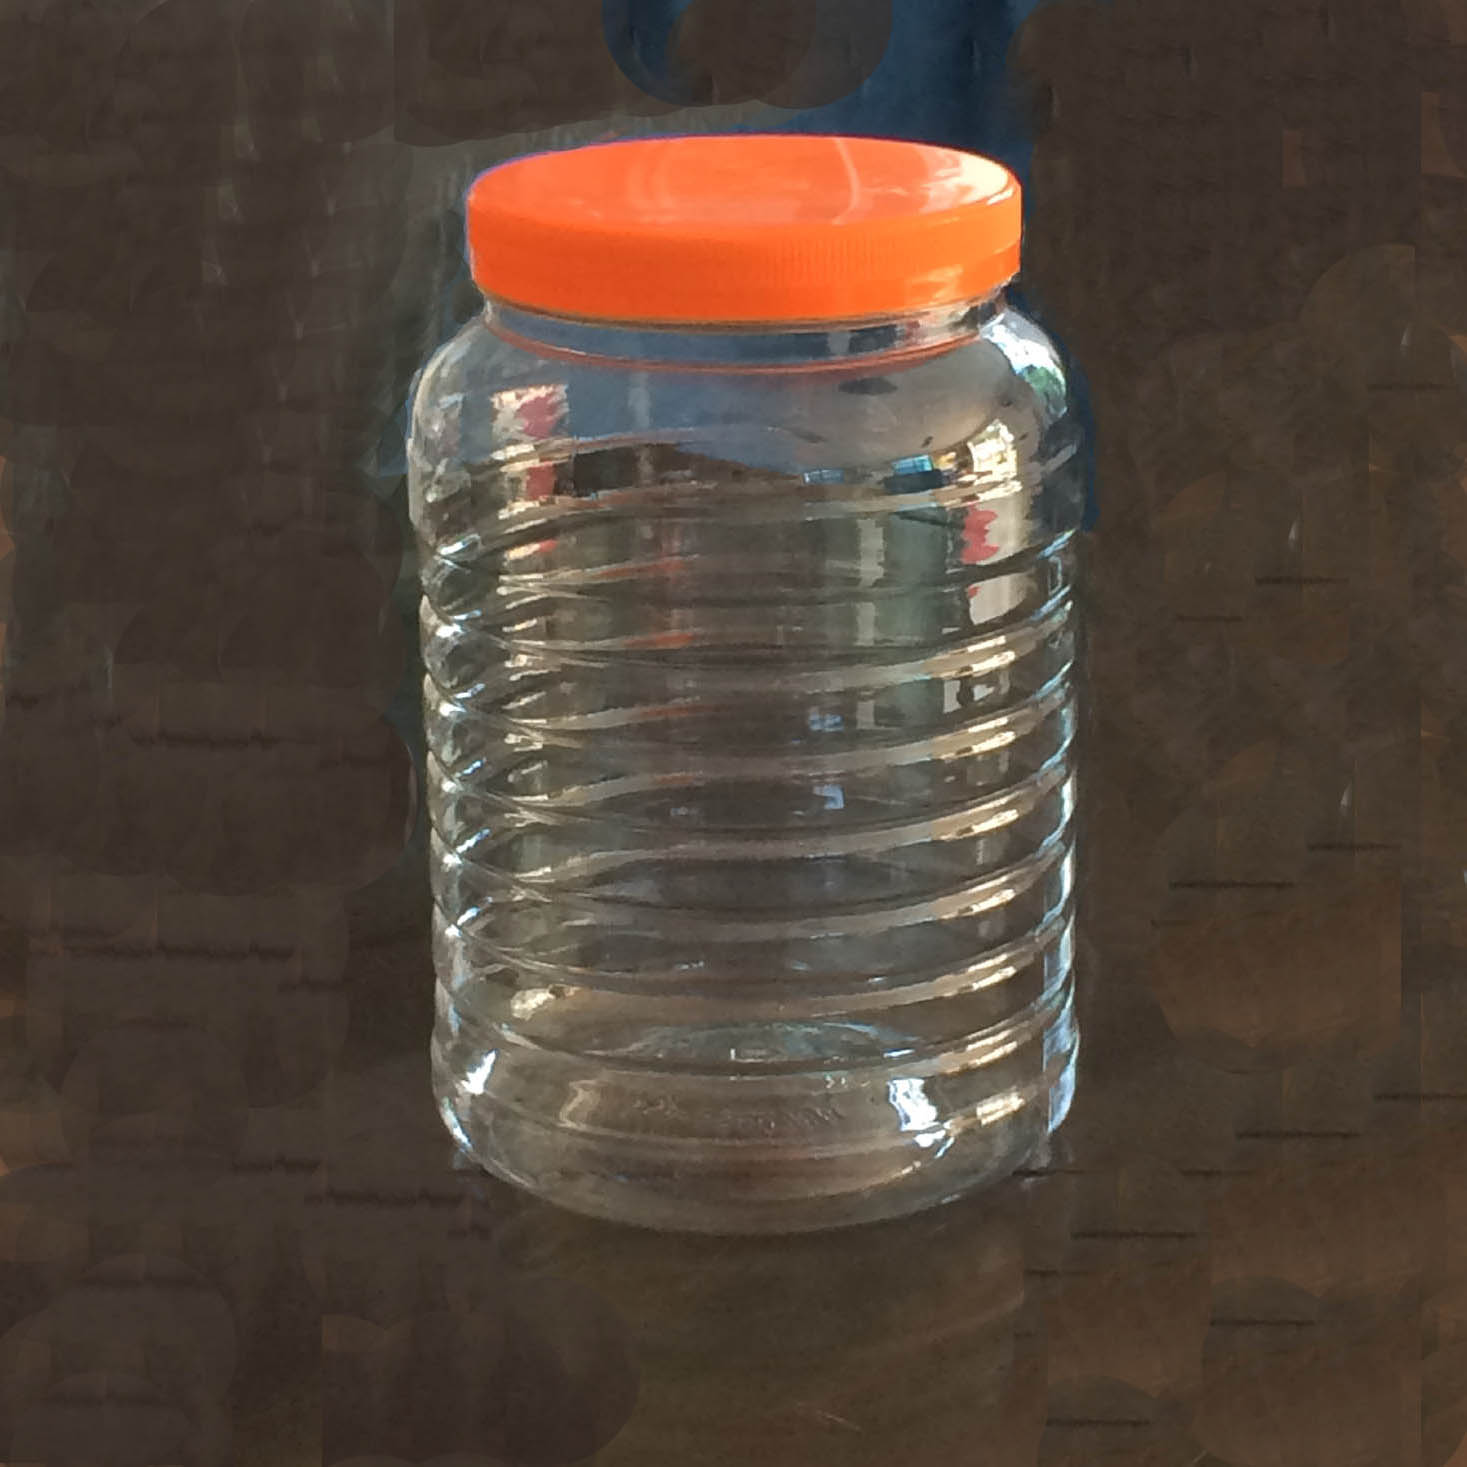 聚酯PET塑料瓶 编号:1388 号加强型 身直径170mm 高260mm 口径130mm 容量5升